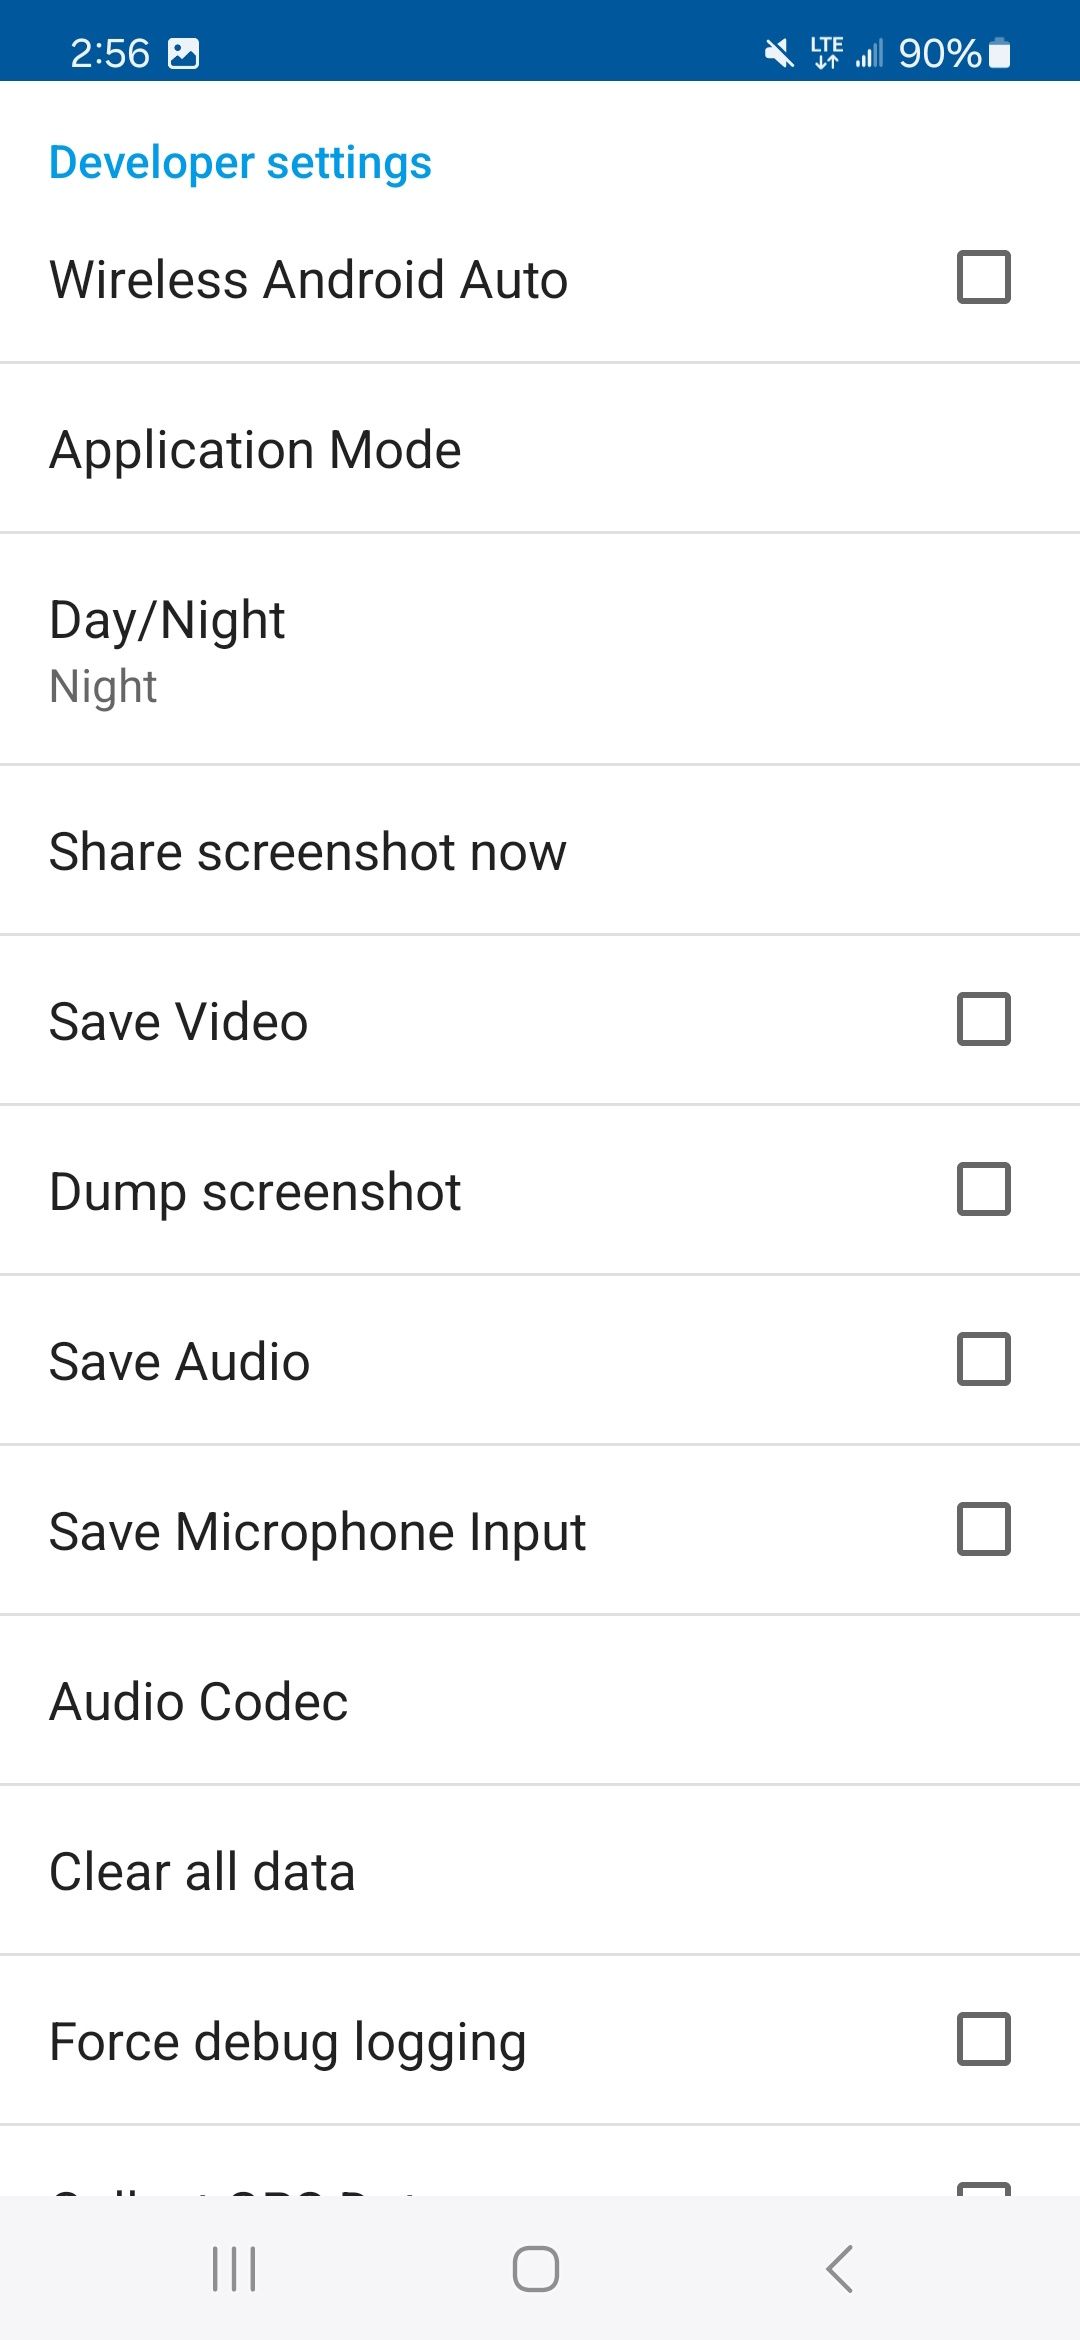 lista de configurações do desenvolvedor no aplicativo Android Auto